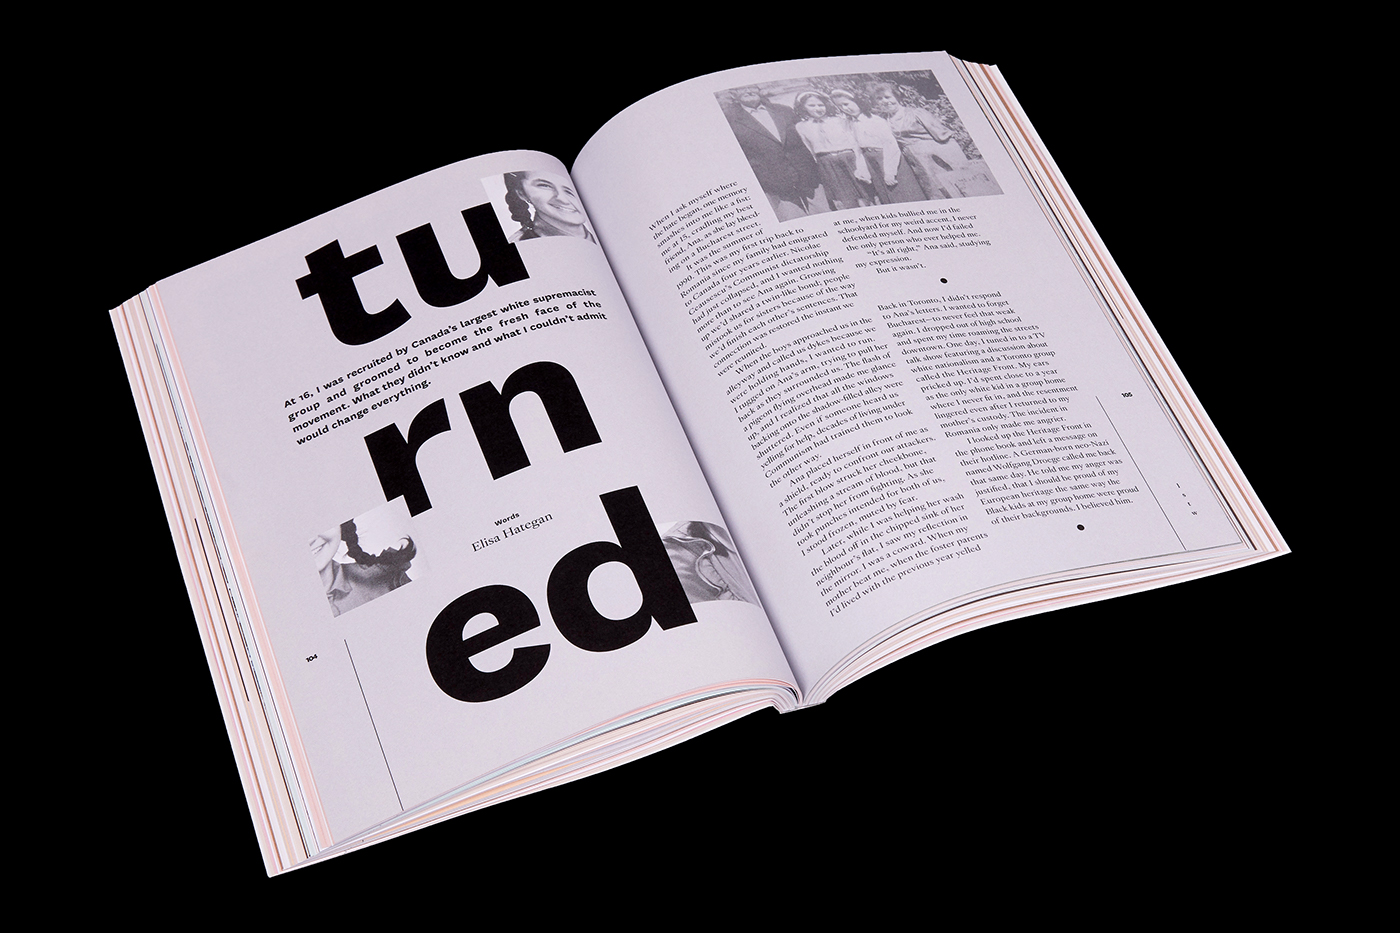 typo magazine editorial design  custom type artwork LGBT graphic design 